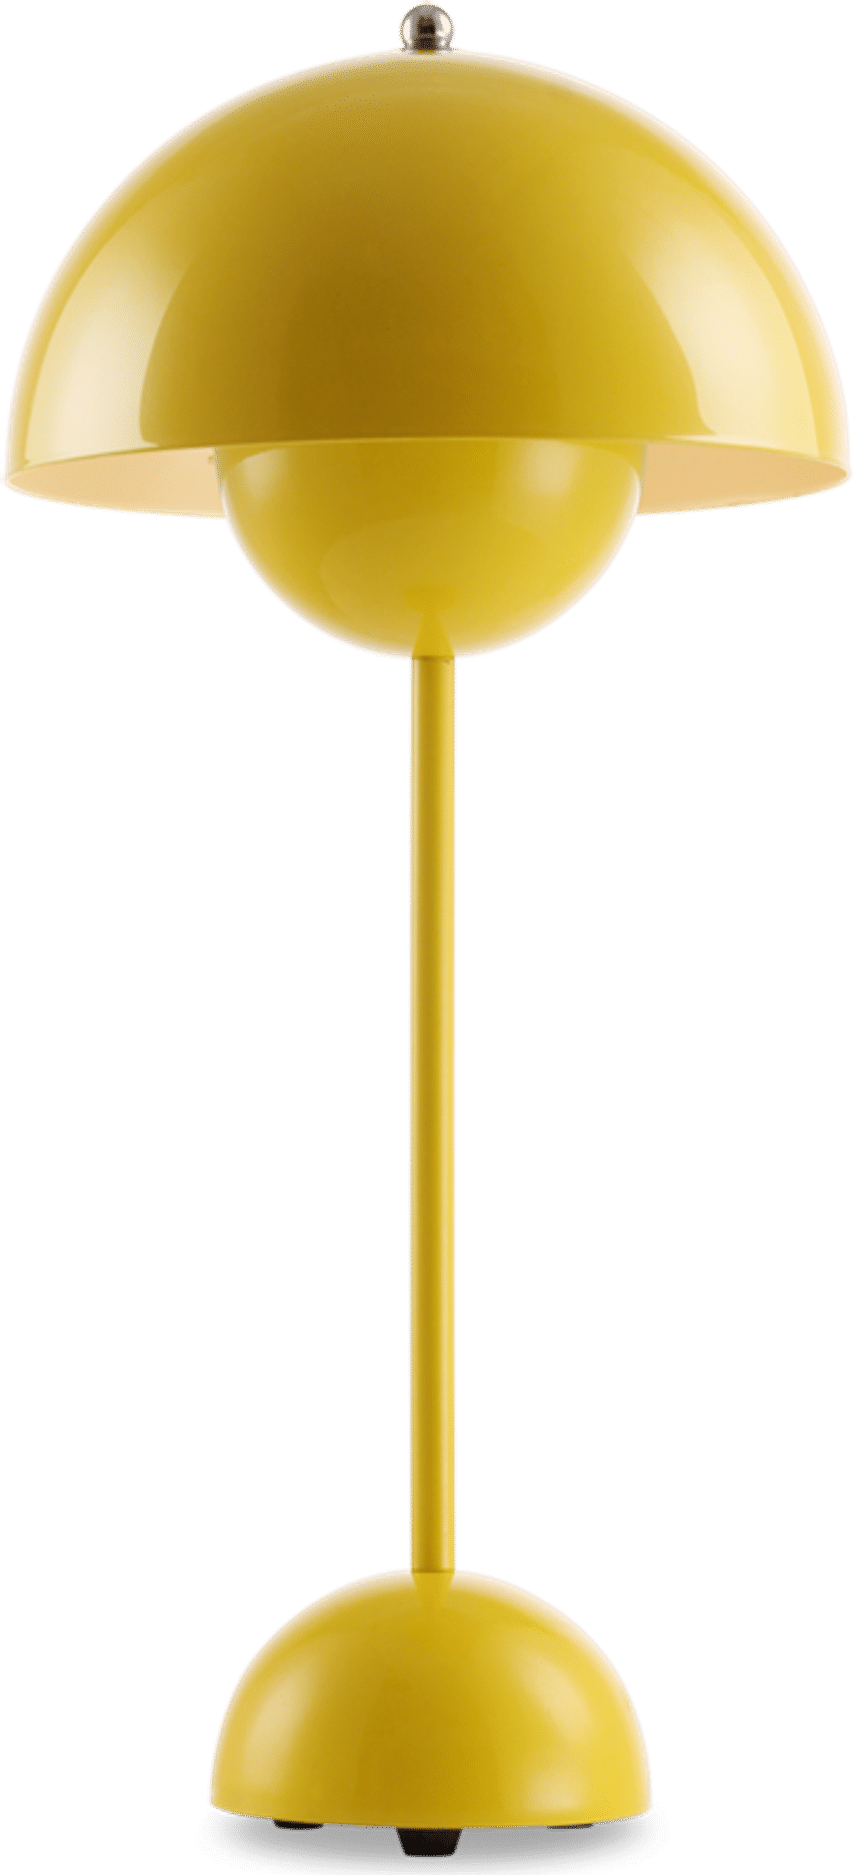 Lampada da tavolo in stile vaso di fiori Yellow image.